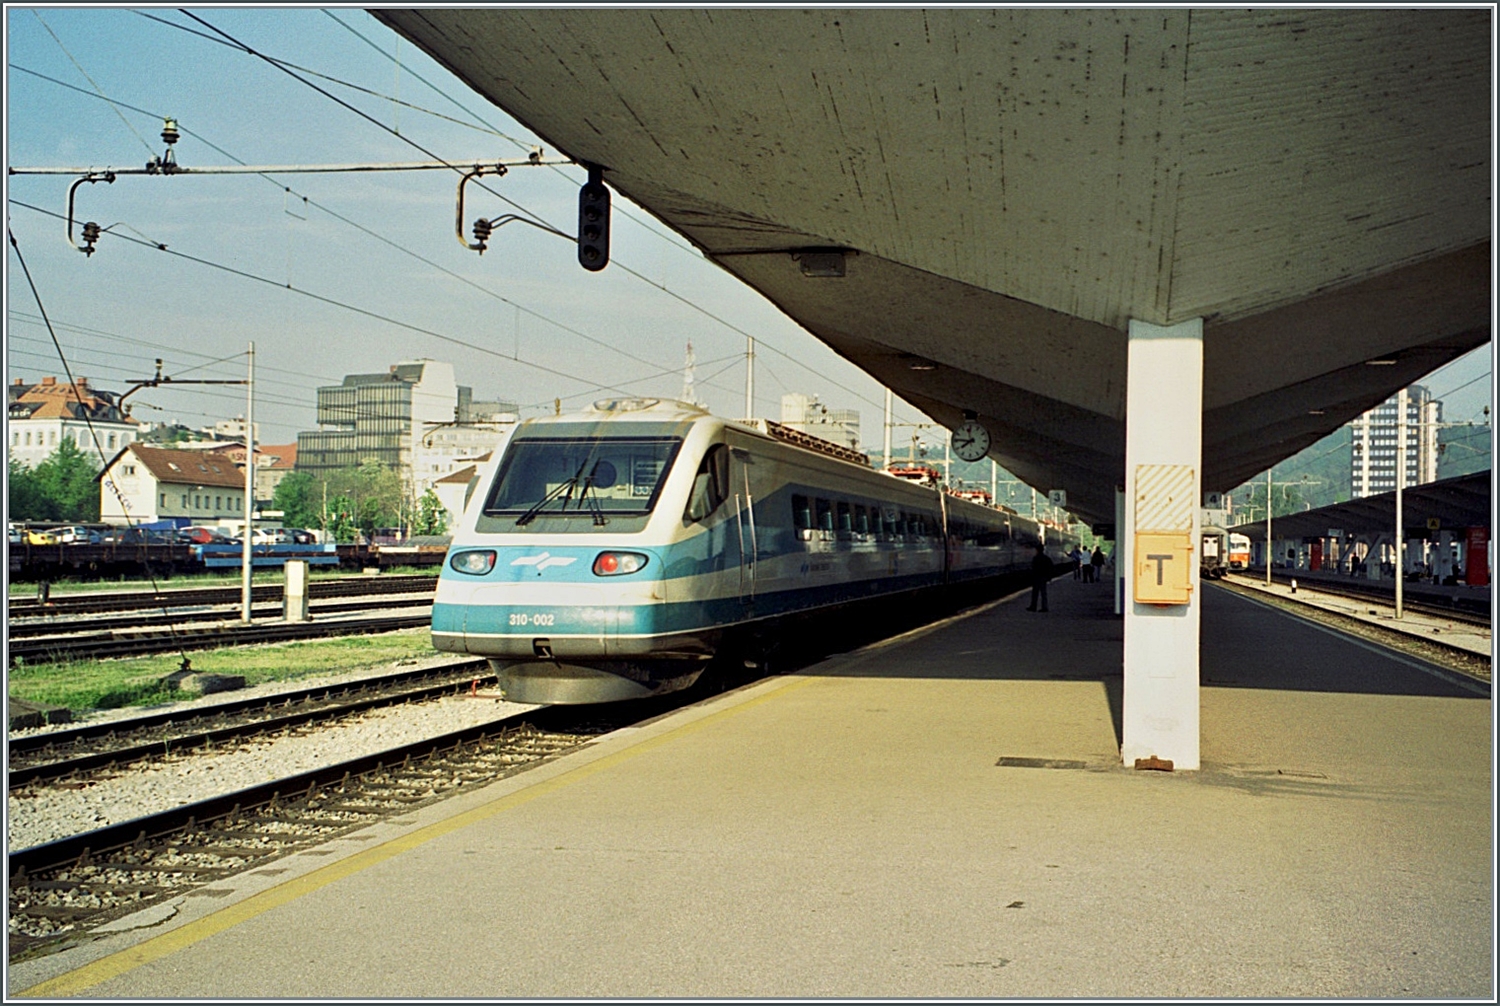 Der SZ  Pendolino  ICS 310-002 wartet in Ljubljana auf die Abfahrt.

Analogbild vom Juni 2001 